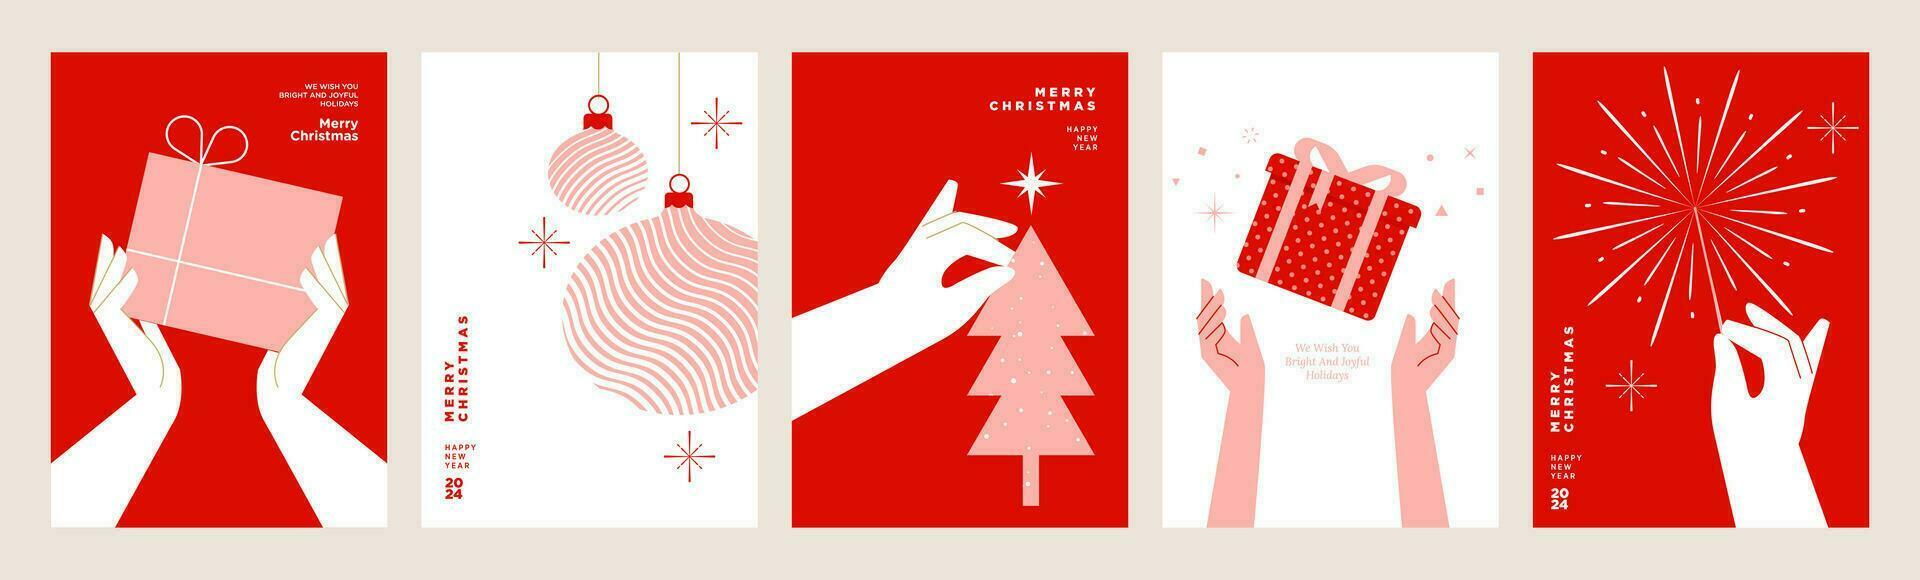 vrolijk Kerstmis en gelukkig nieuw jaar groet kaarten. vector illustratie concepten voor achtergrond, groet kaart, partij uitnodiging kaart, website banier, sociaal media banier, afzet materiaal.